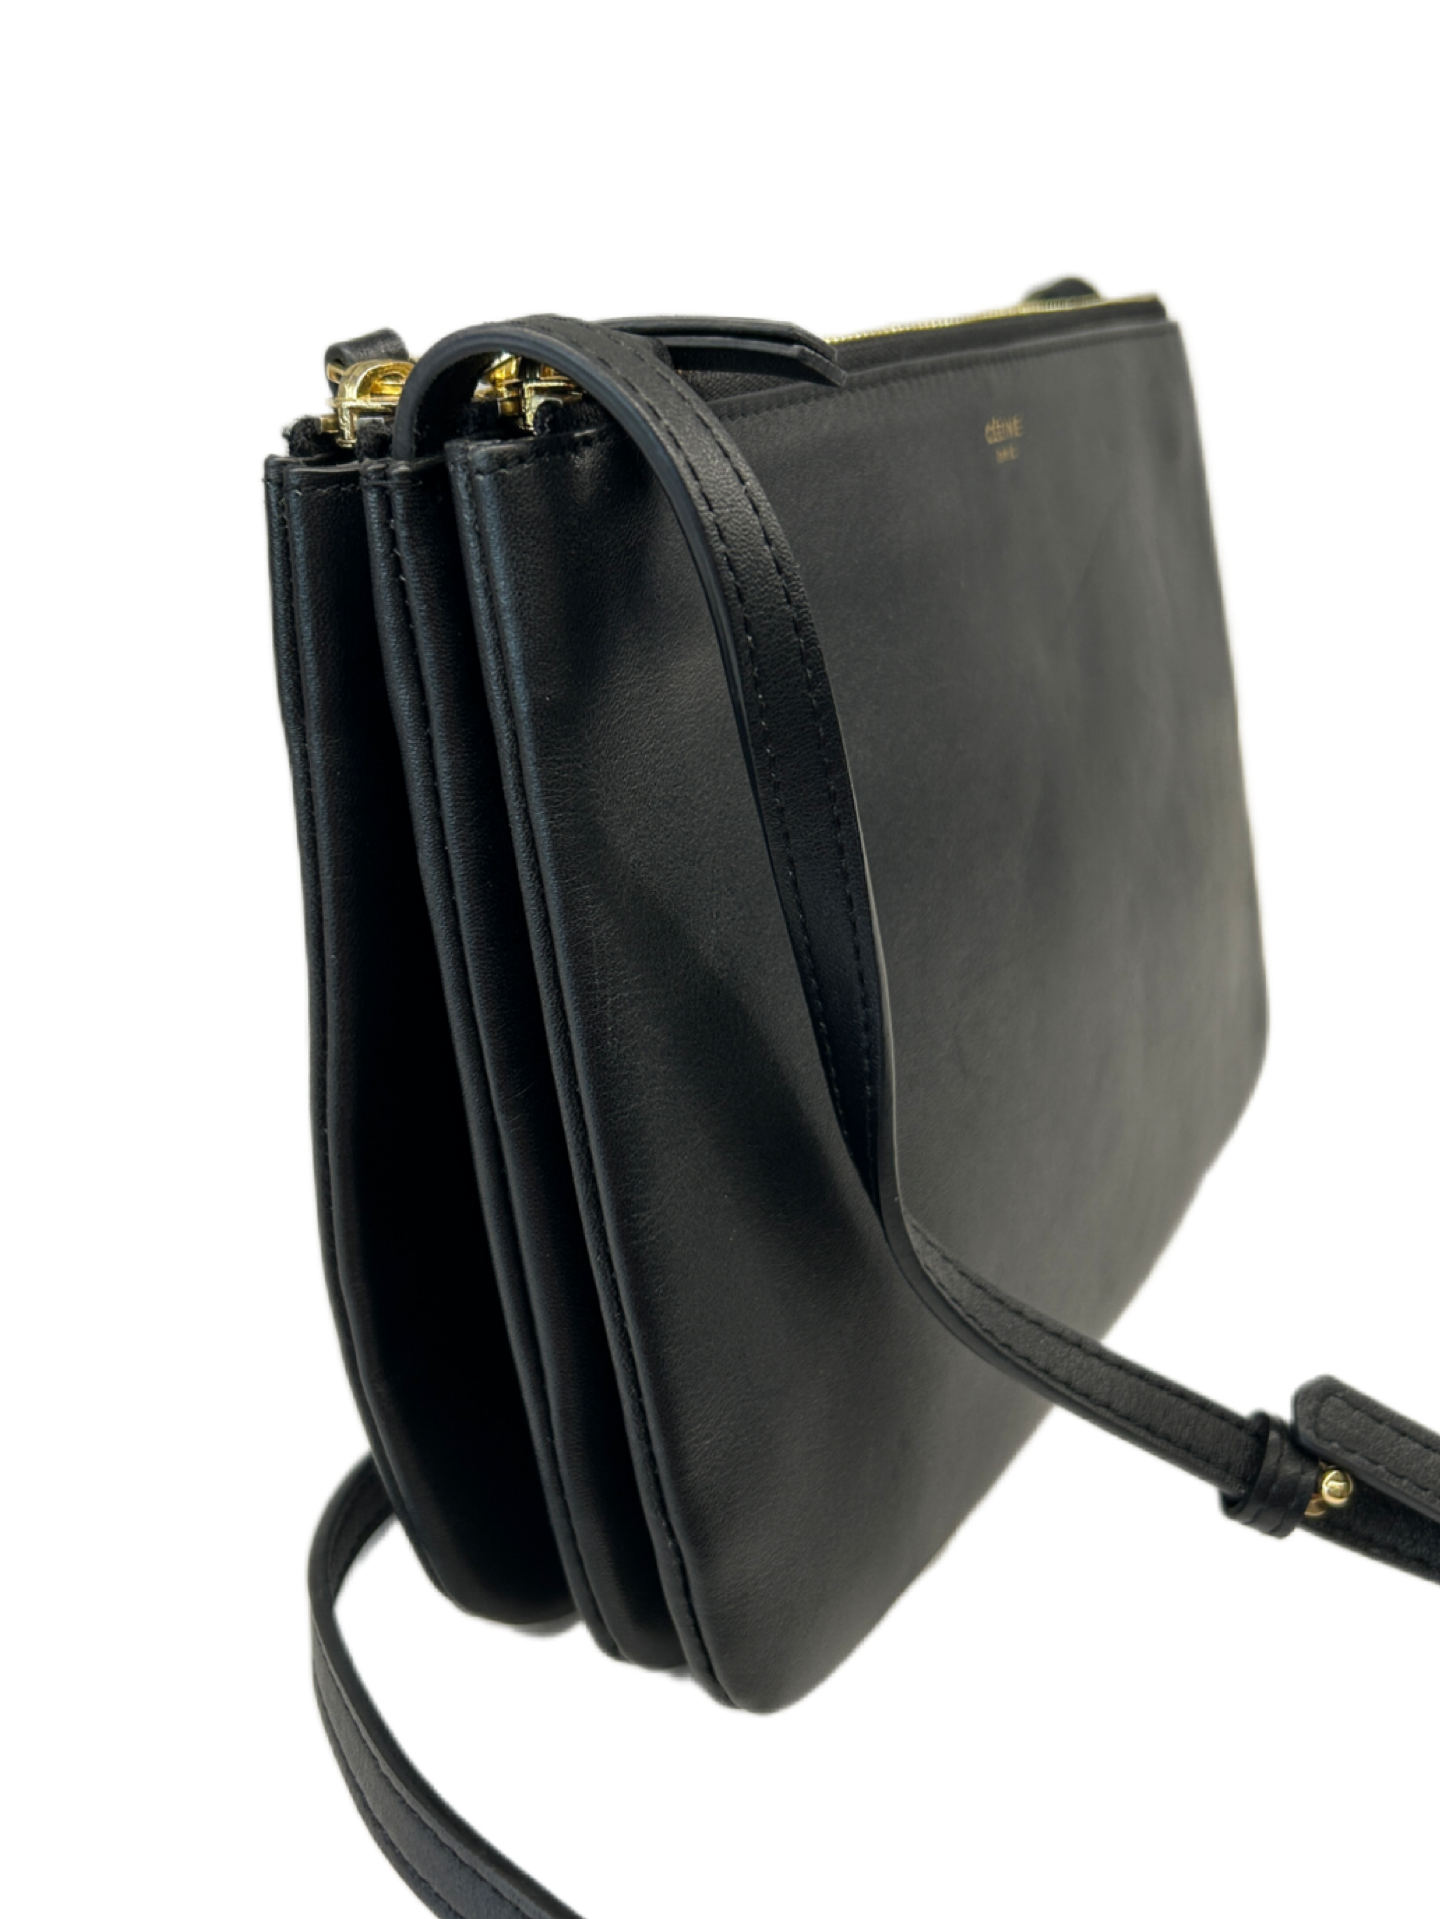 Celine Trio Bag in Black Leather